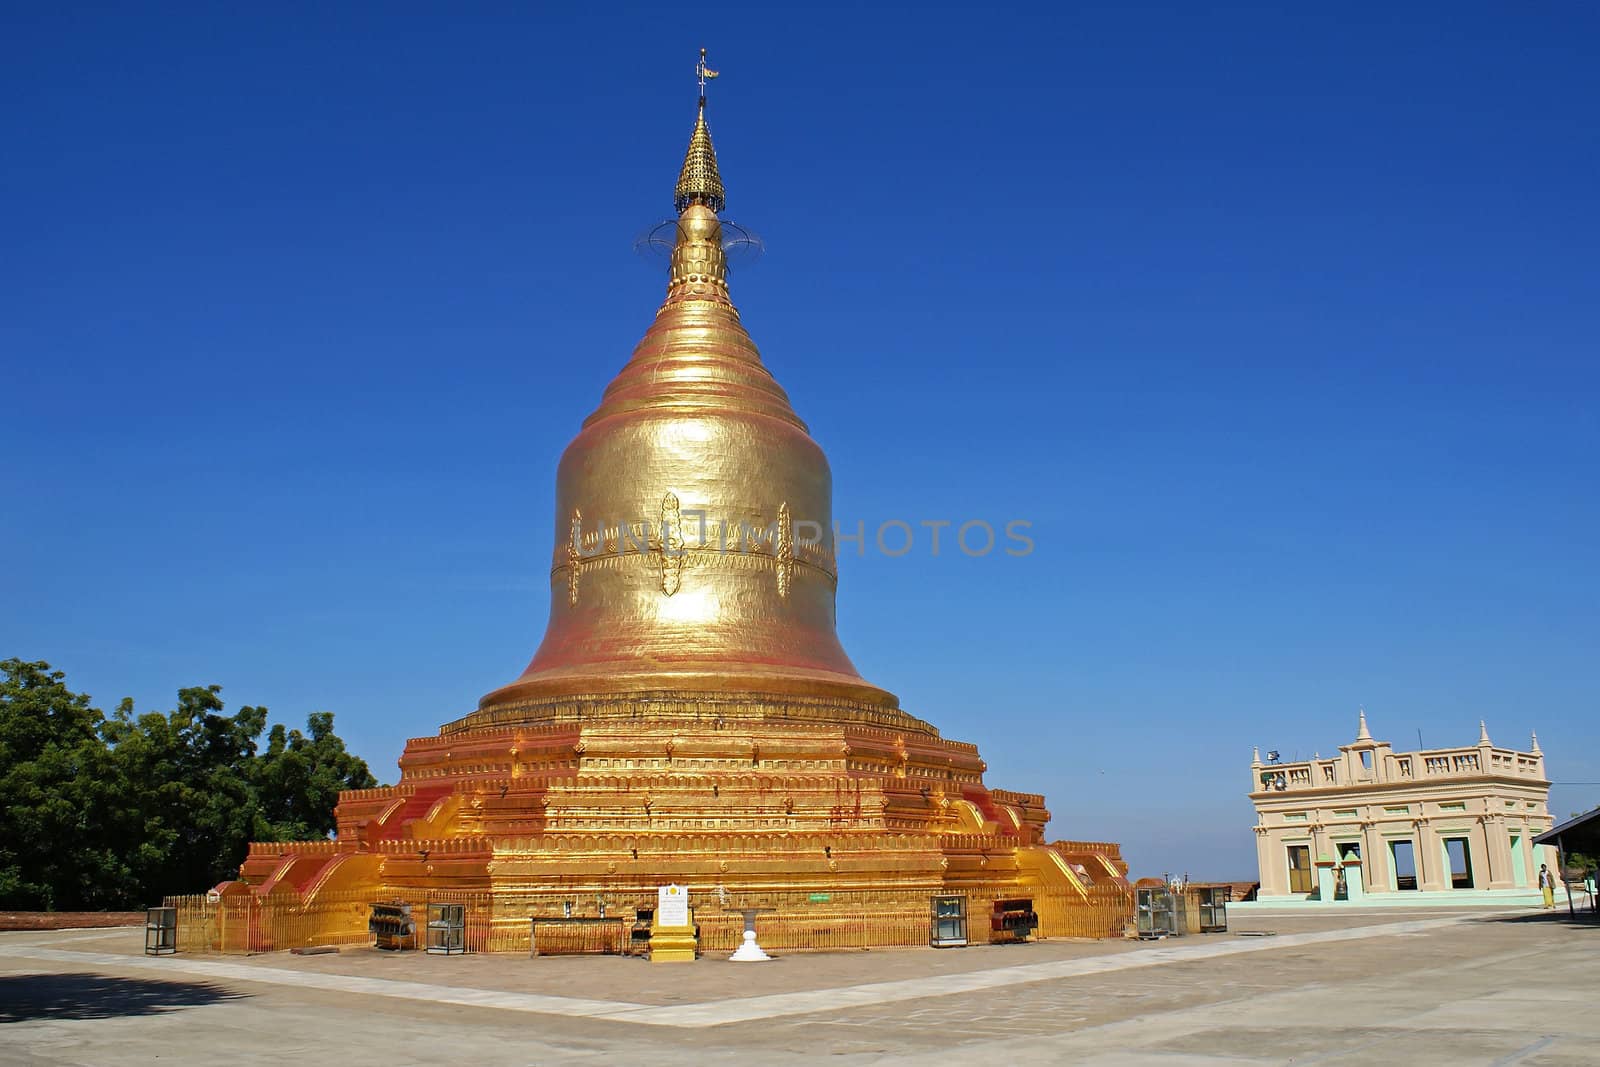 Beautiful Lawkananda Pagoda, one of the attractions of Bagan, Myanmar